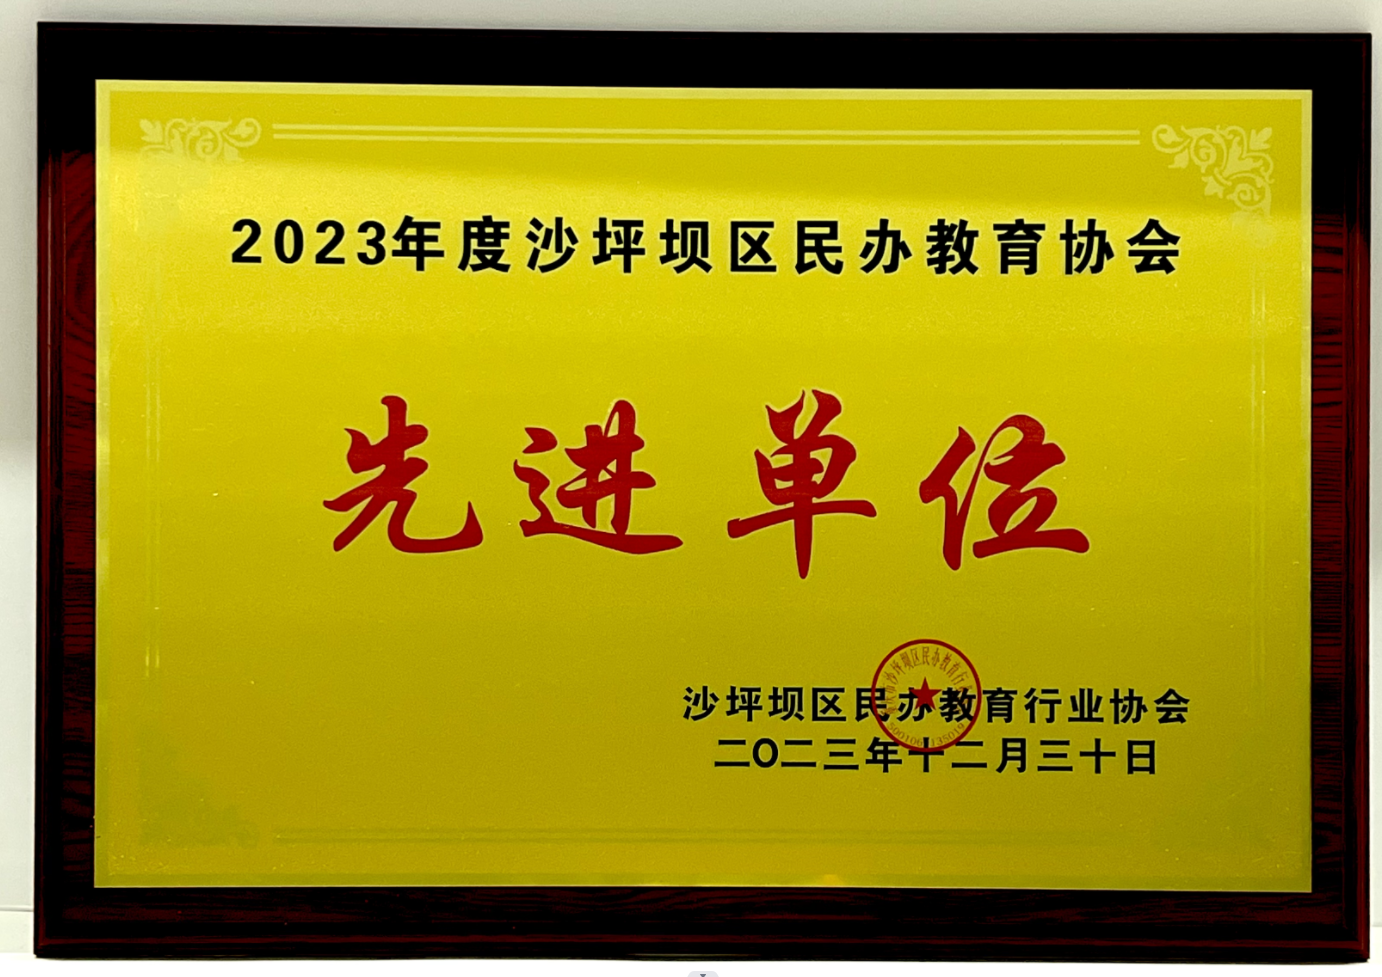 重庆市沙坪坝区法商教育培训学校荣获2023年度沙坪坝区民办教育先进单位